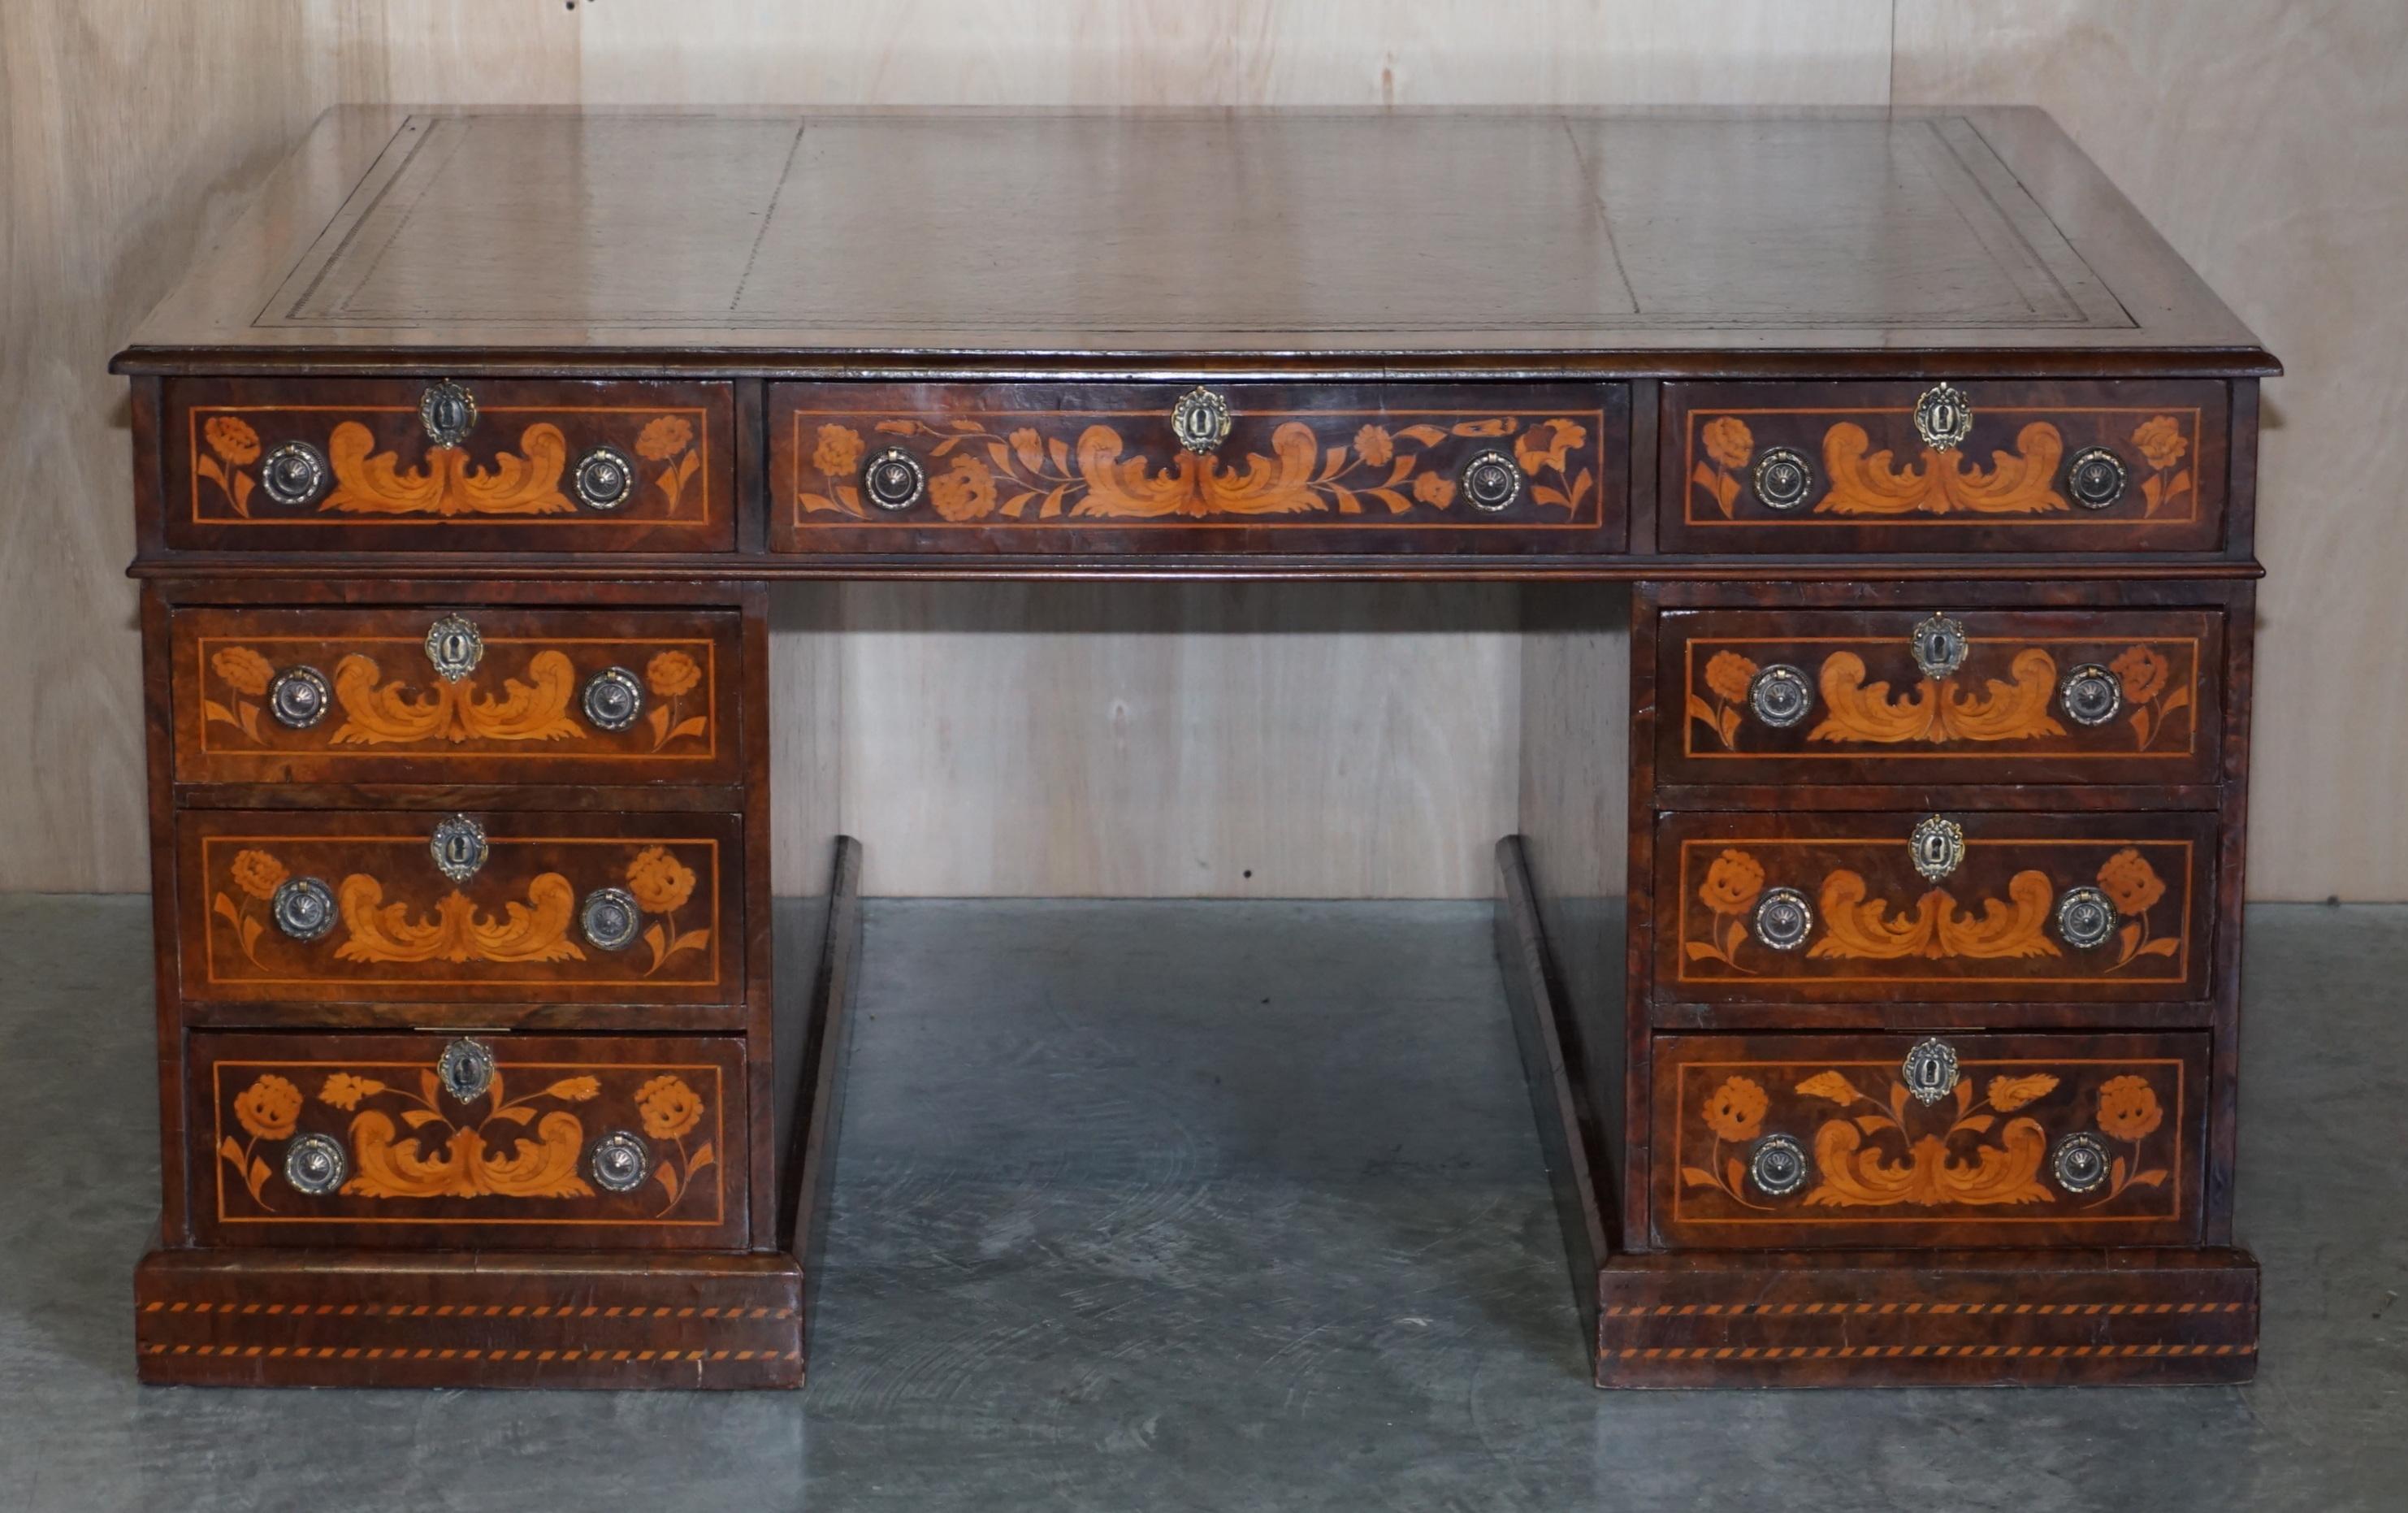 Wir freuen uns sehr, diesen um 1880 in den Niederlanden gefertigten Schreibtisch mit Intarsien in Museumsqualität zum Verkauf anbieten zu können, der vollständig restauriert worden ist

Ein wirklich atemberaubendes und exquisit gemachtes Stück,